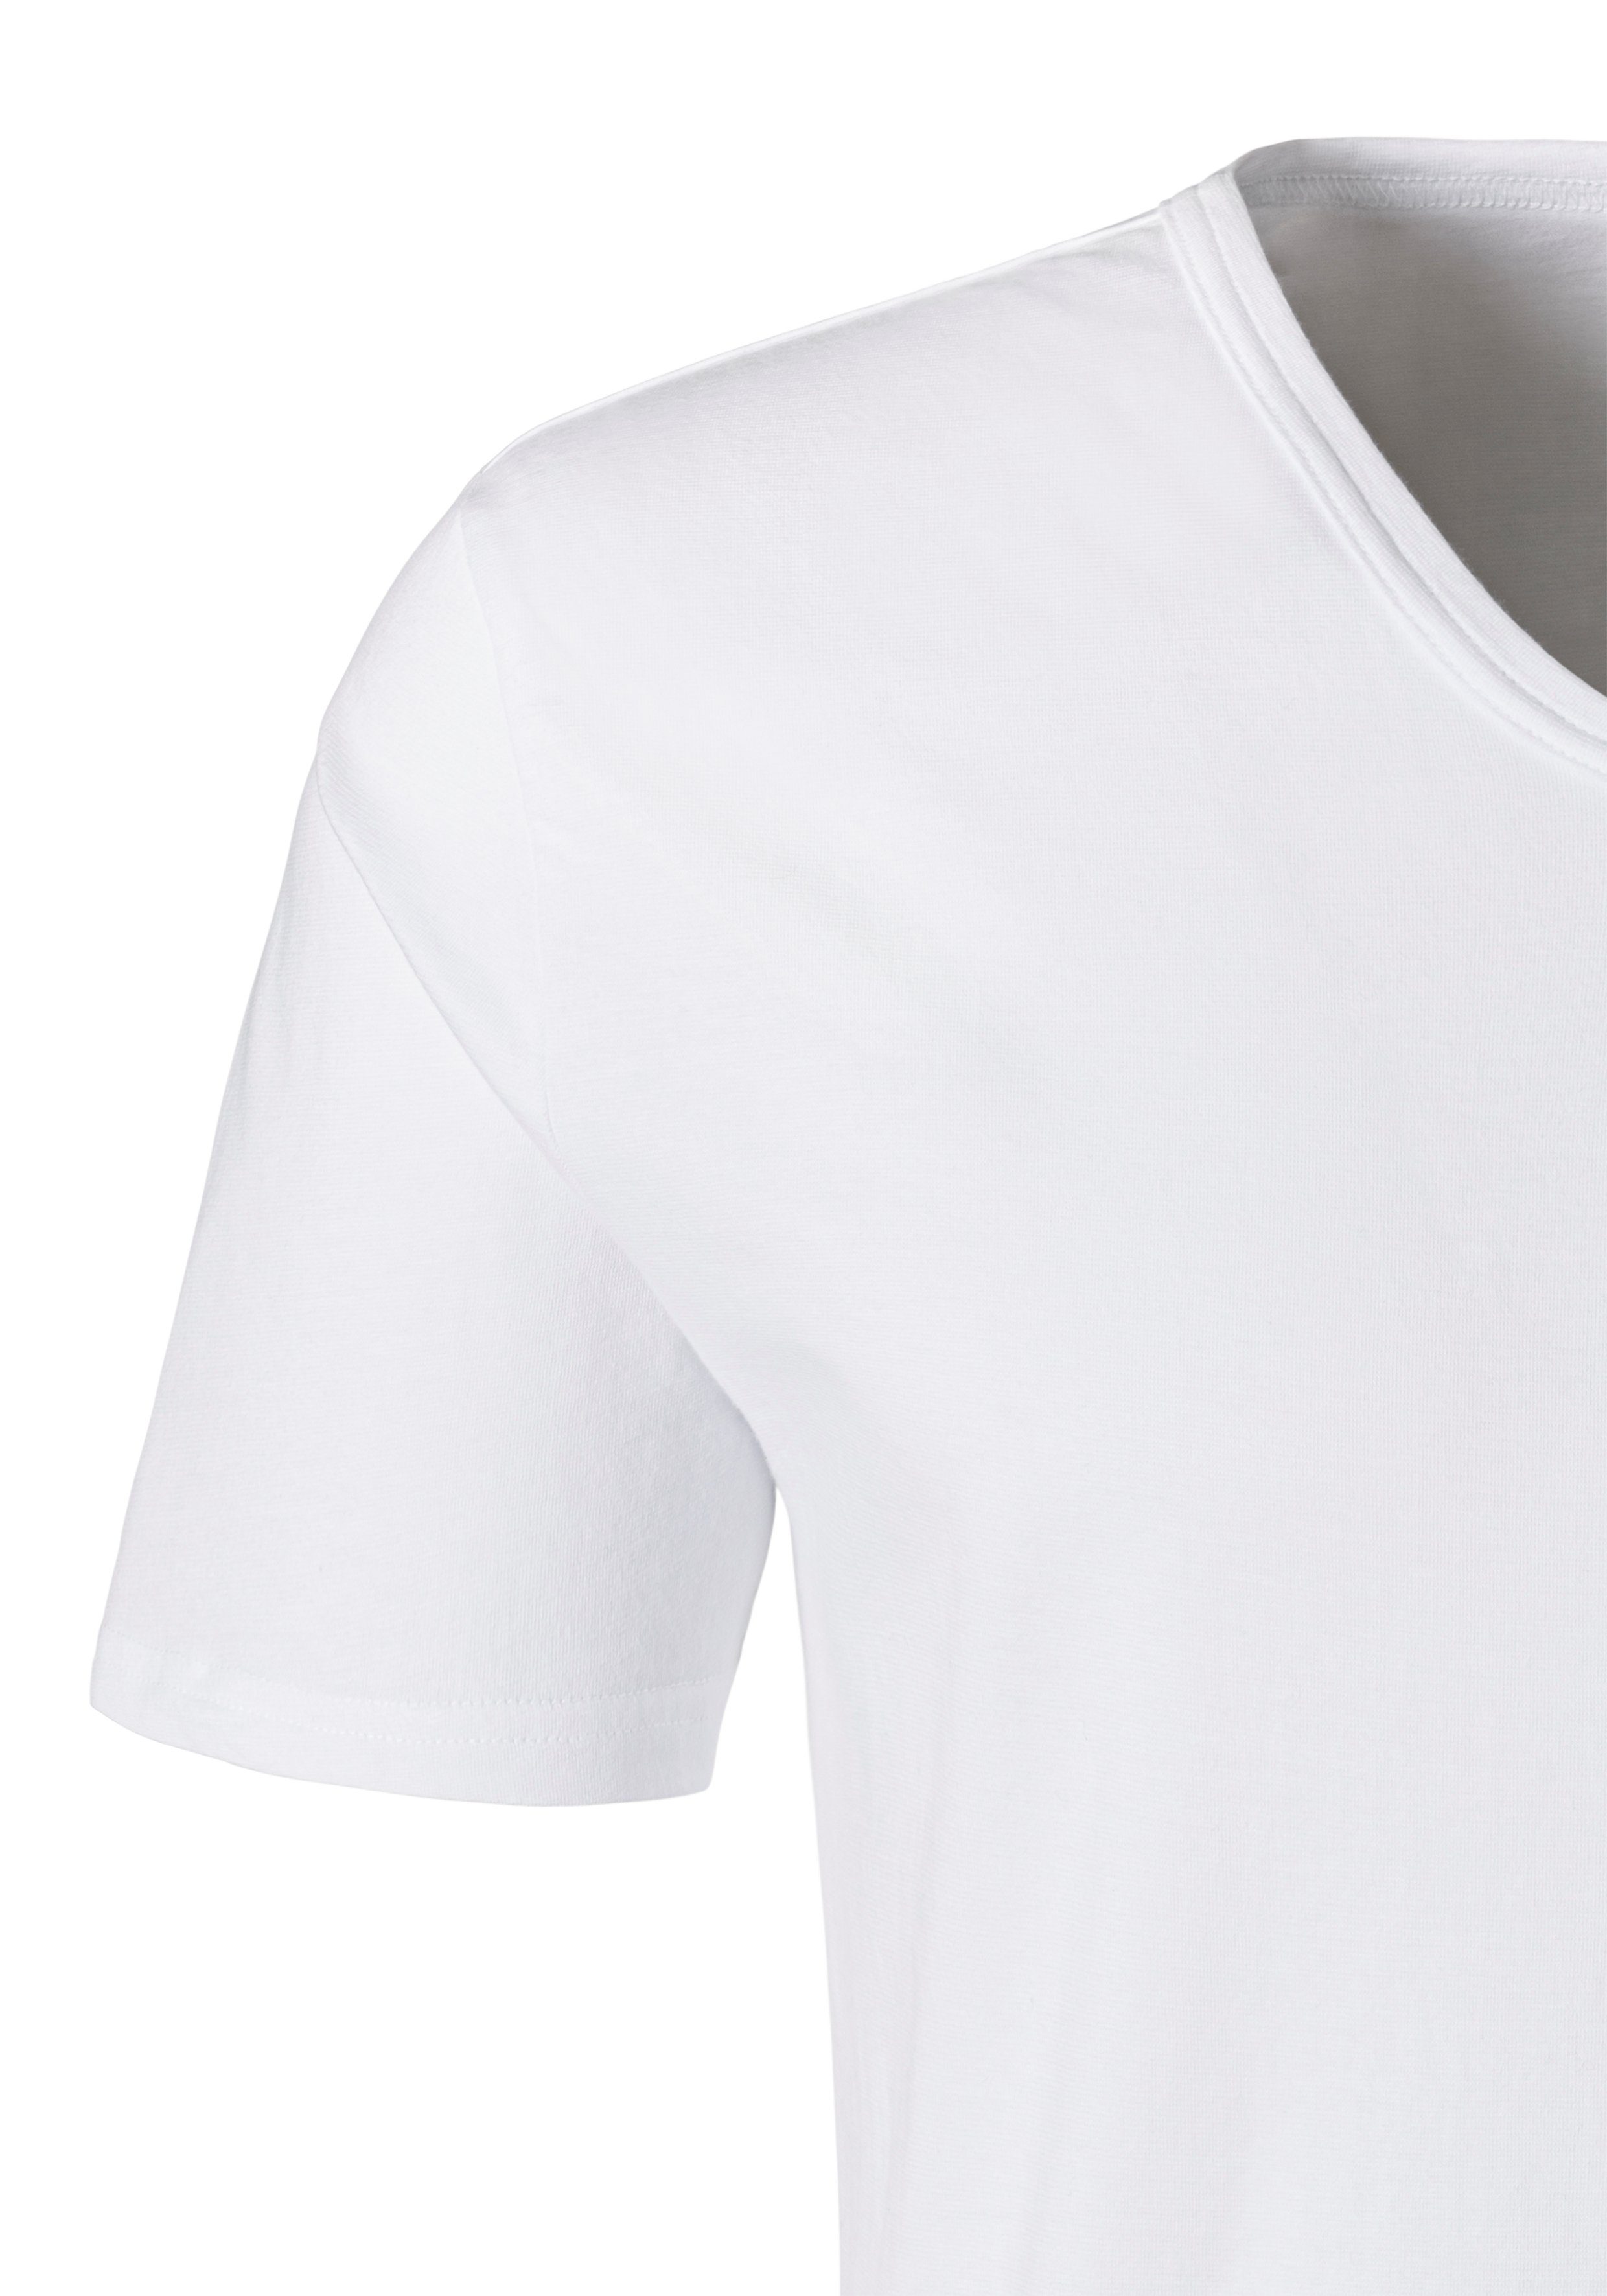 weiß V-Ausschnitt kleinem T-Shirt Logo, H.I.S Unterziehshirt (2-St) und mit Unterhemd,